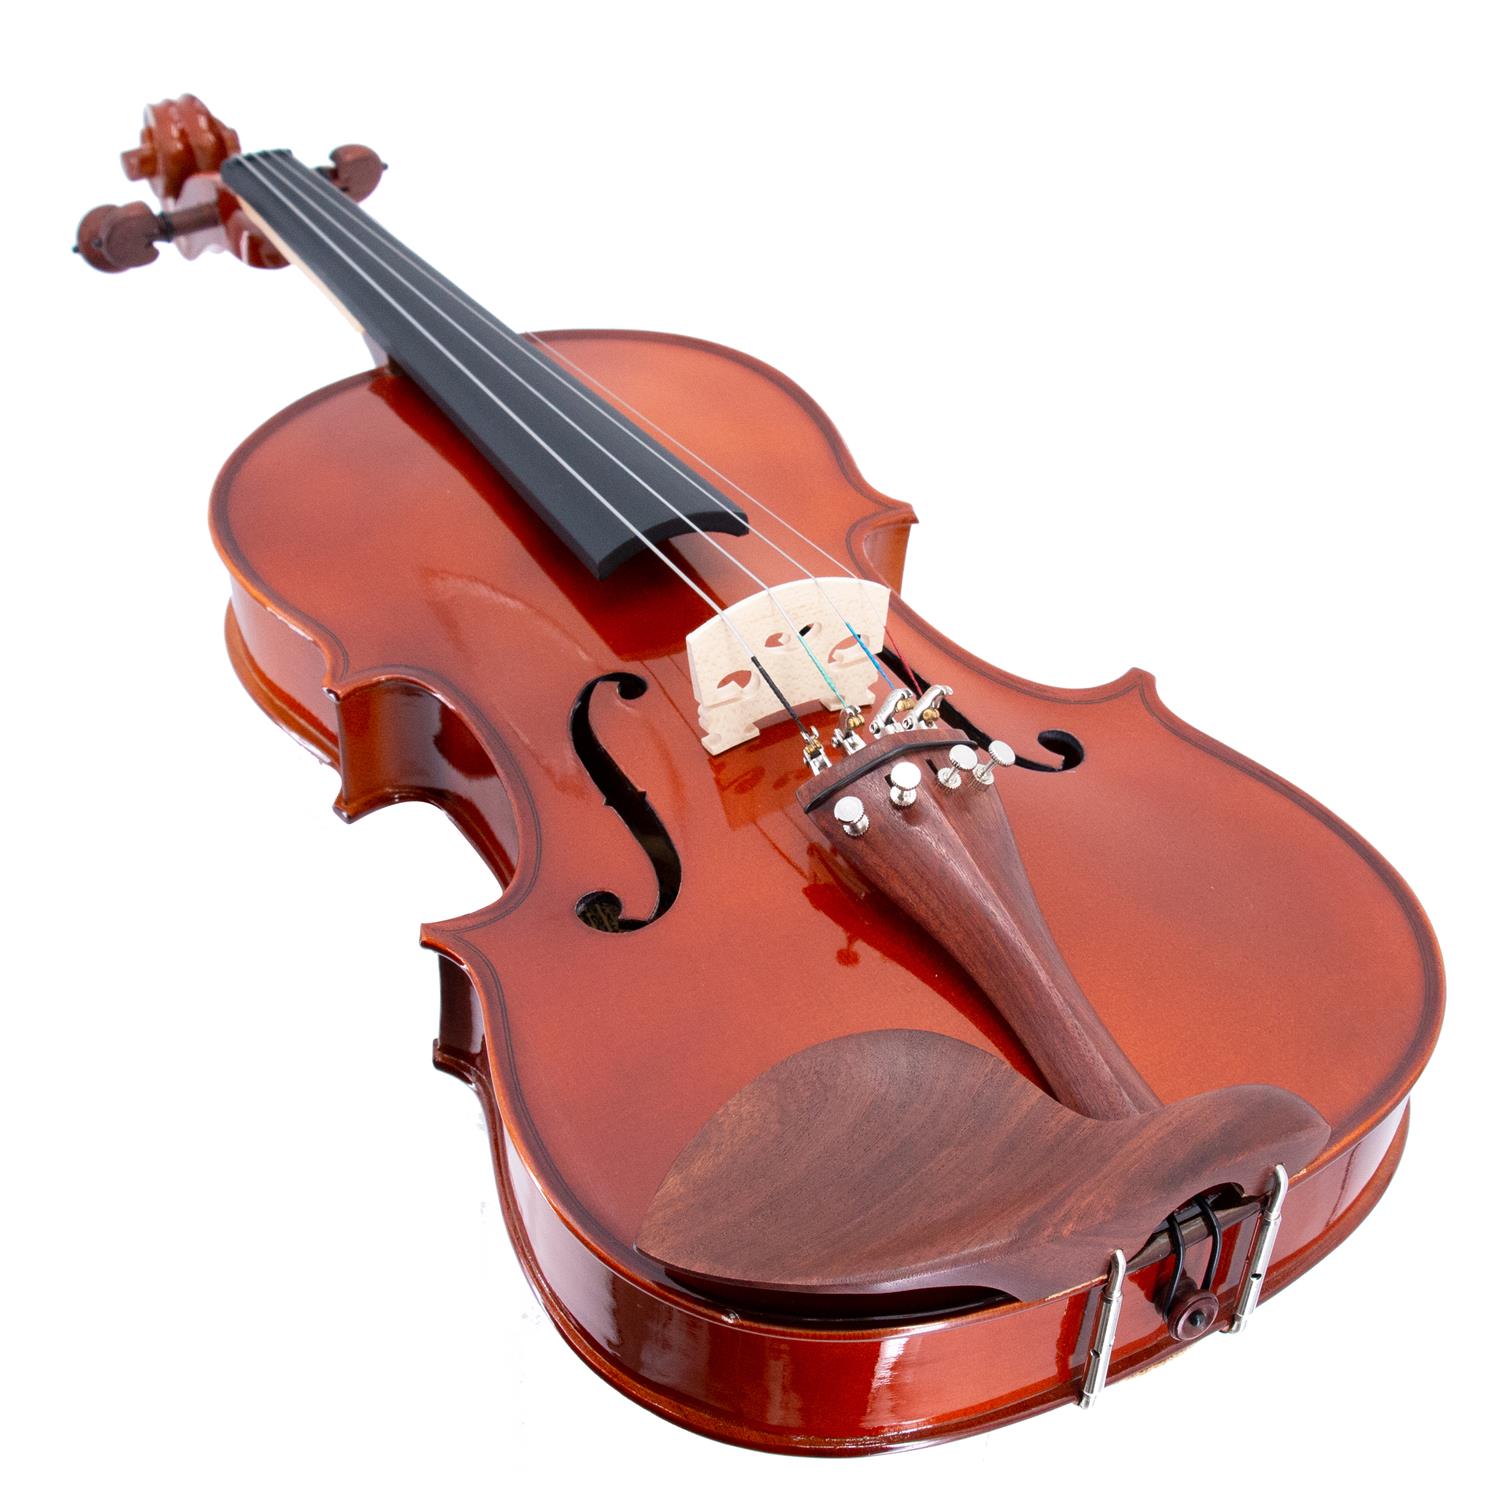 Viola da 40,6 cm Massello "Accademy" Finitura Lucida, parti in